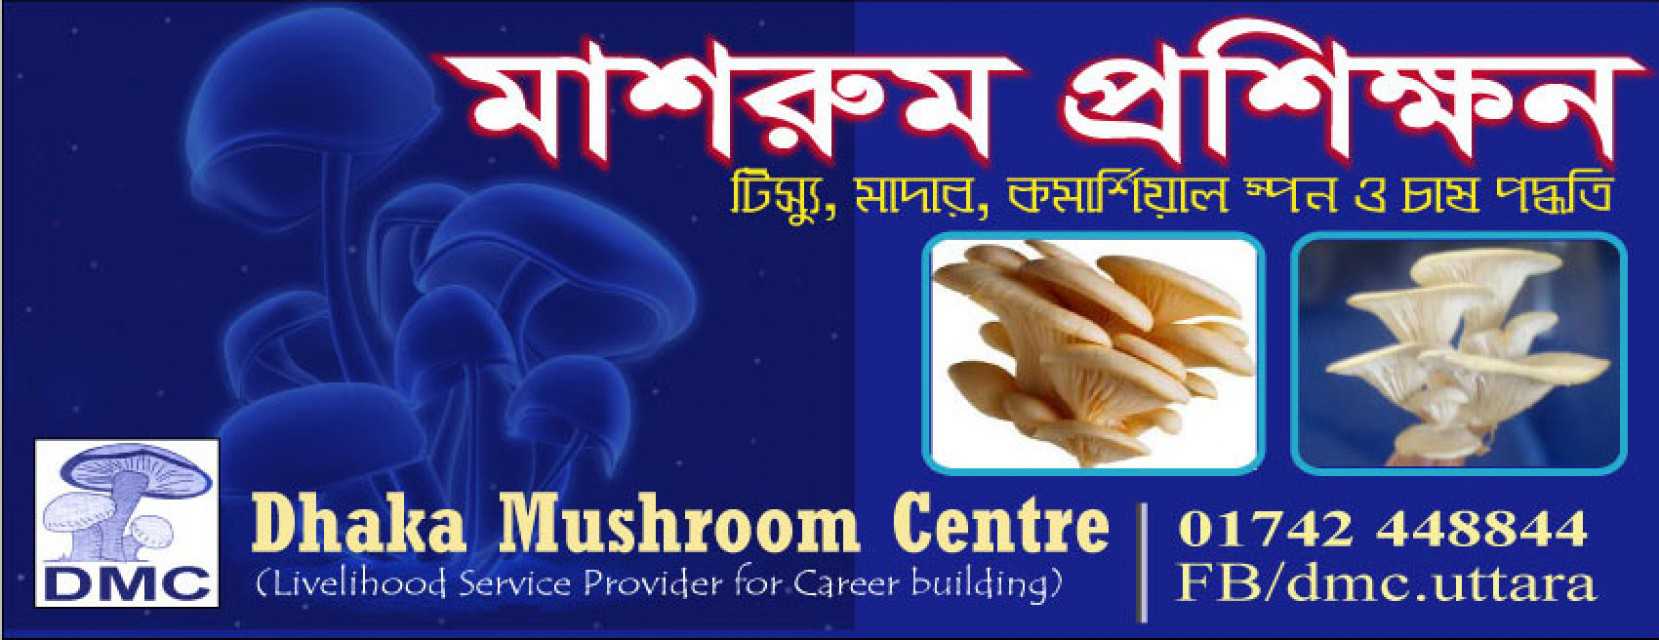 Dhaka Mushroom Centre -dmc